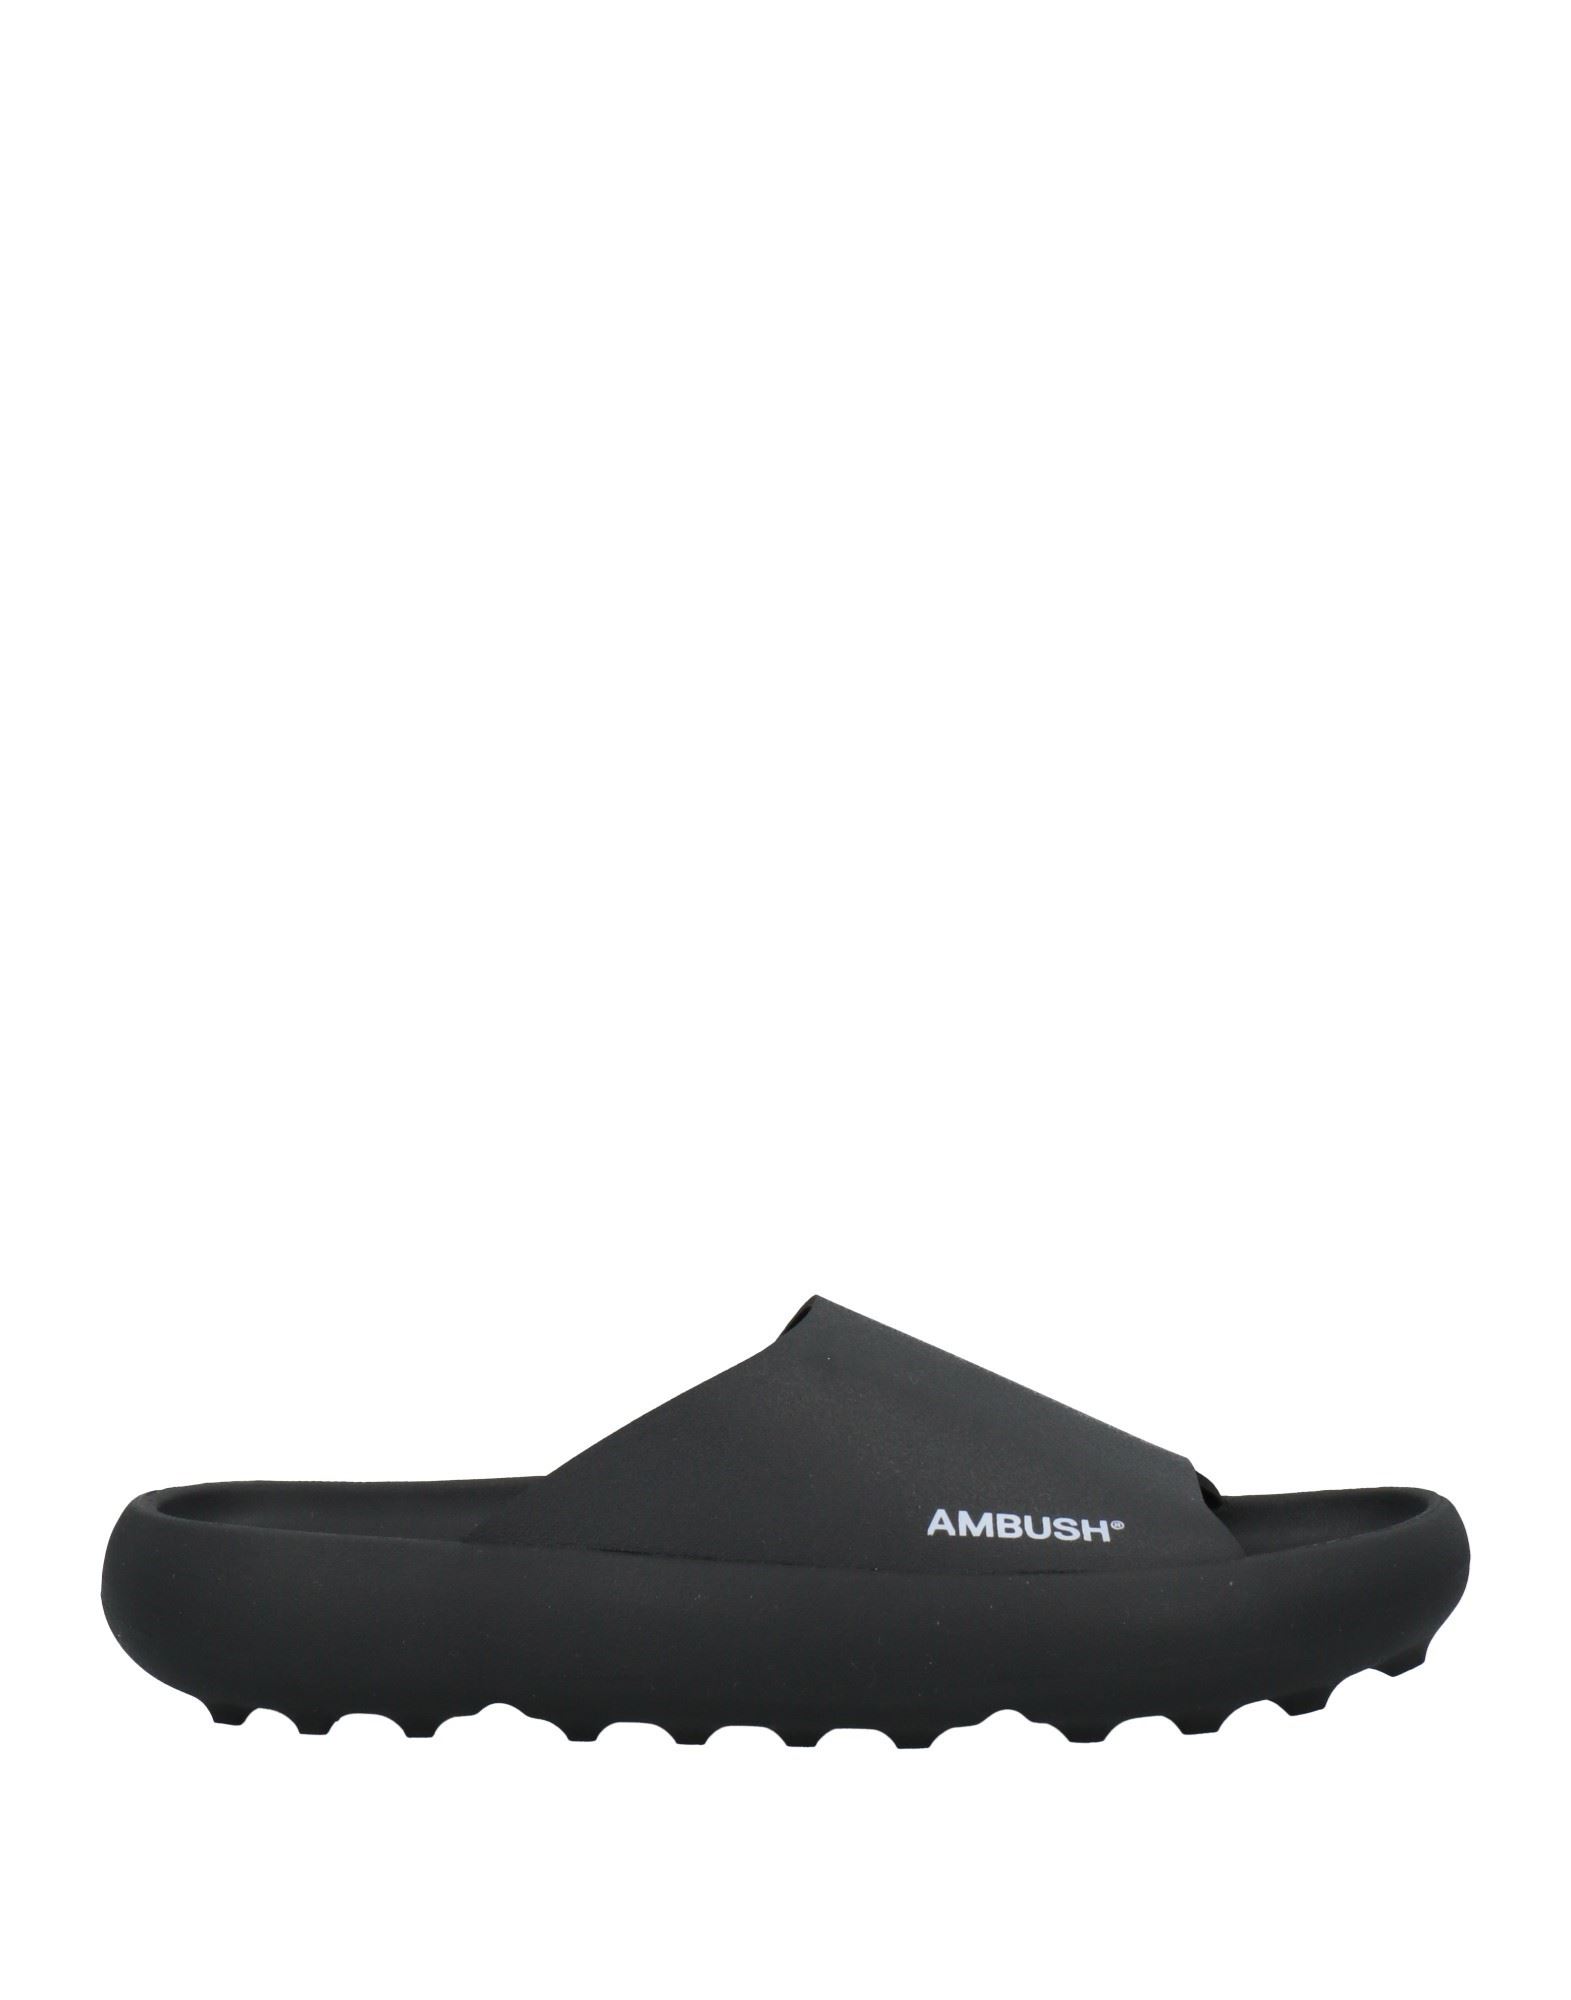 Shop Ambush Man Sandals Black Size 8 Rubber